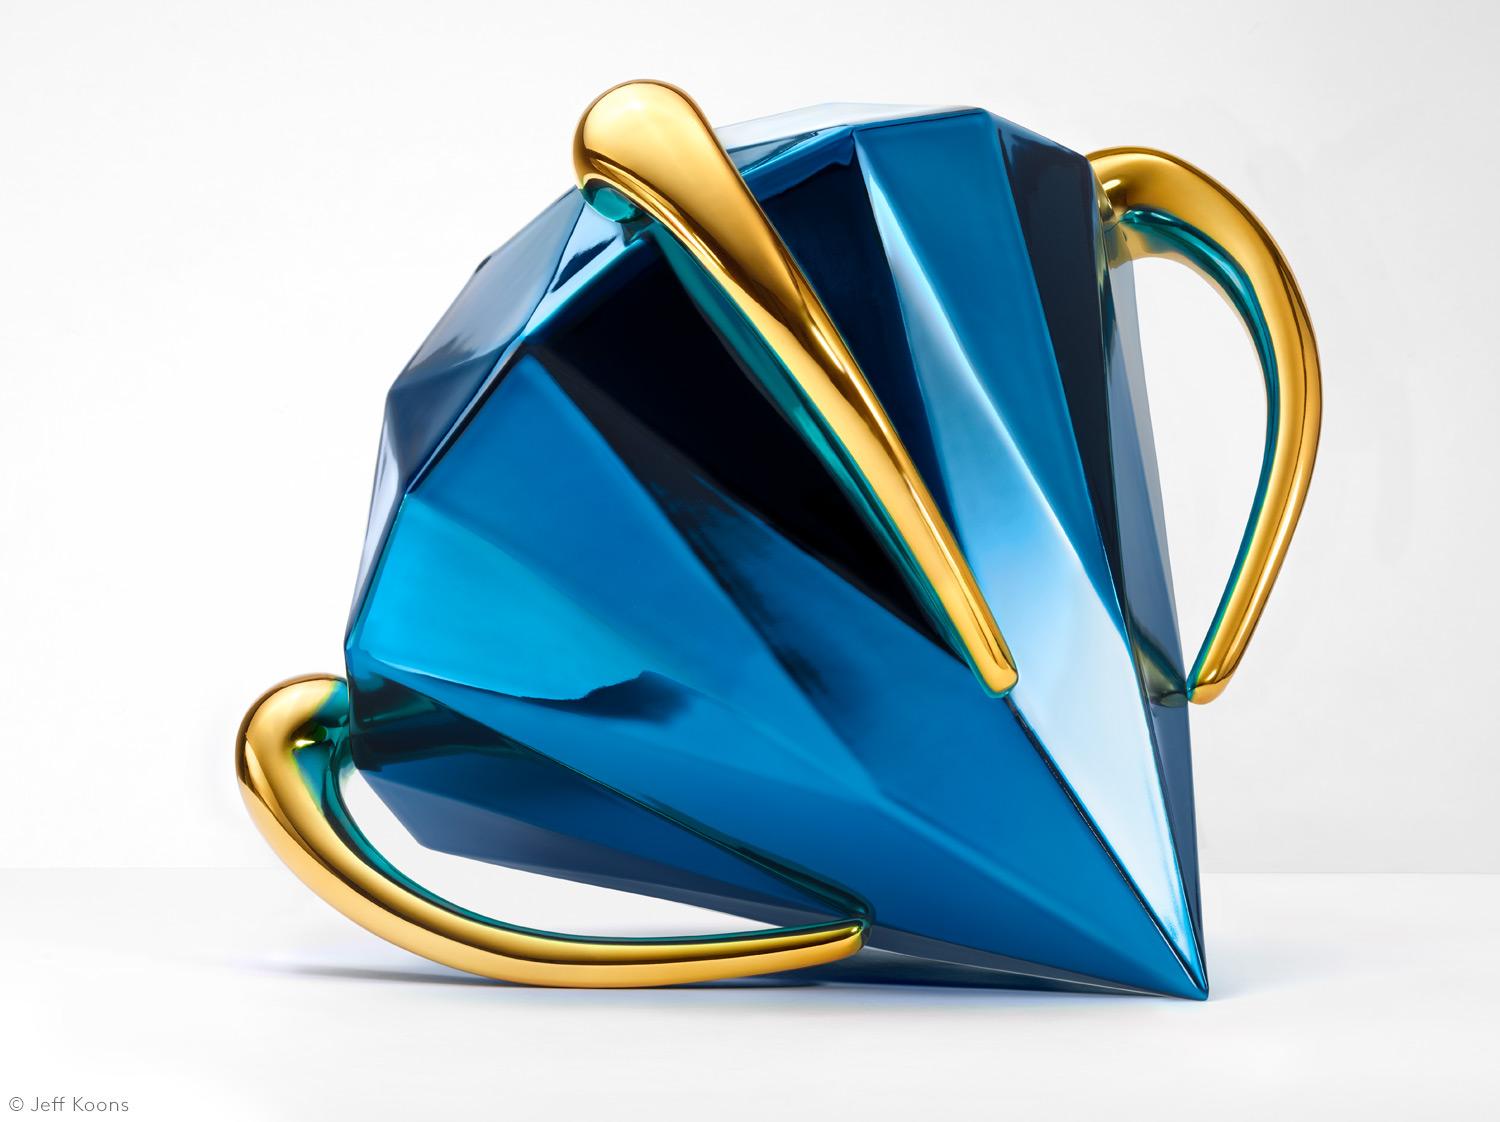 Artistics : Jeff Koons
Titre : Diamant (bleu)
Année : 2023
Support : Porcelaine avec revêtement chromatique métallique
Dimensions : 12 1/2 x 15 1/2 x 12 5/8 pouces (31.8 x 39.3 x 32.1 cm)
Édition : 599 ; Signature incisée, numéro d'édition, titre et